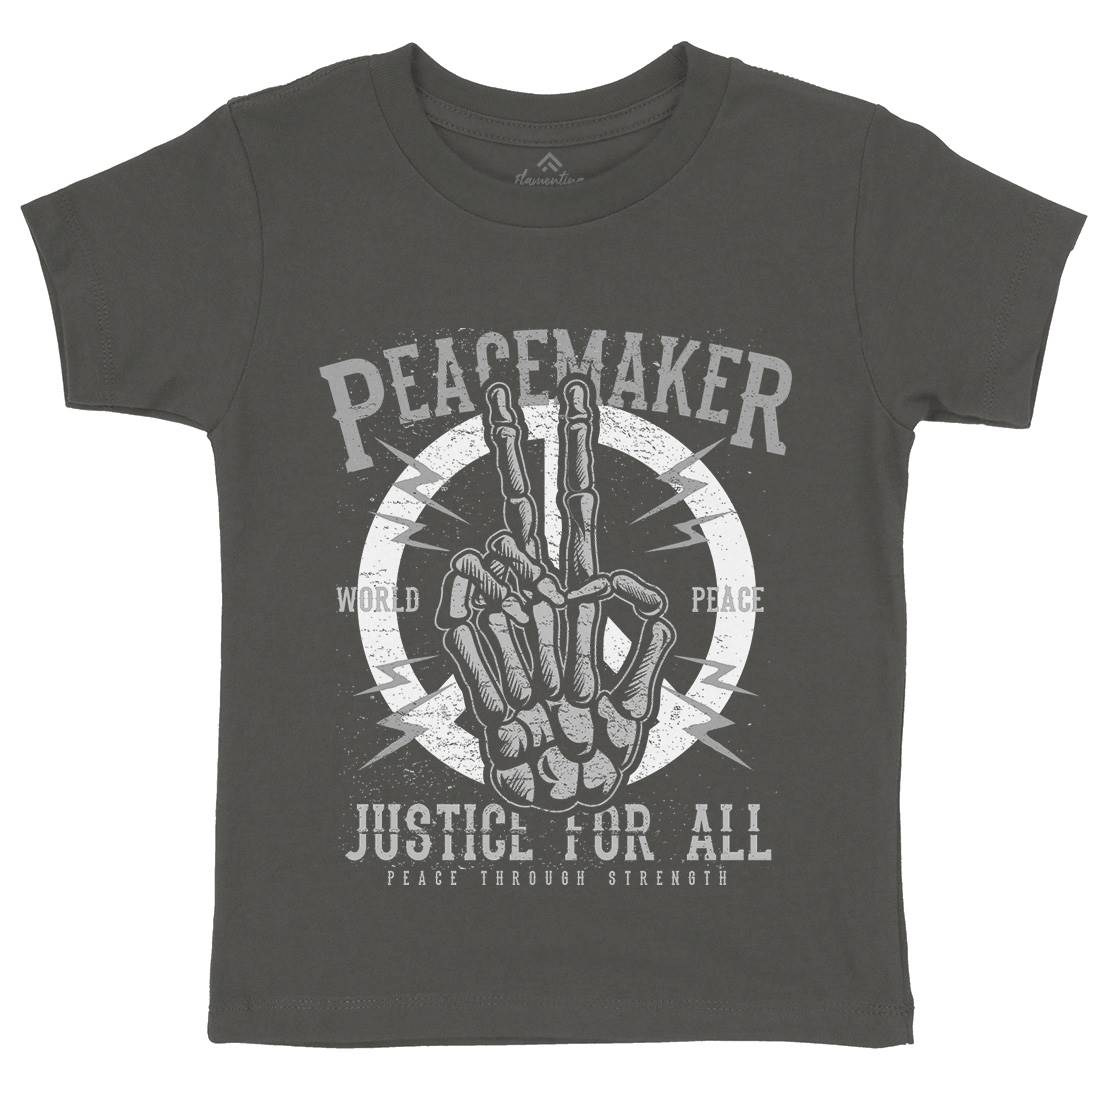 Maker Kids Organic Crew Neck T-Shirt Peace A108